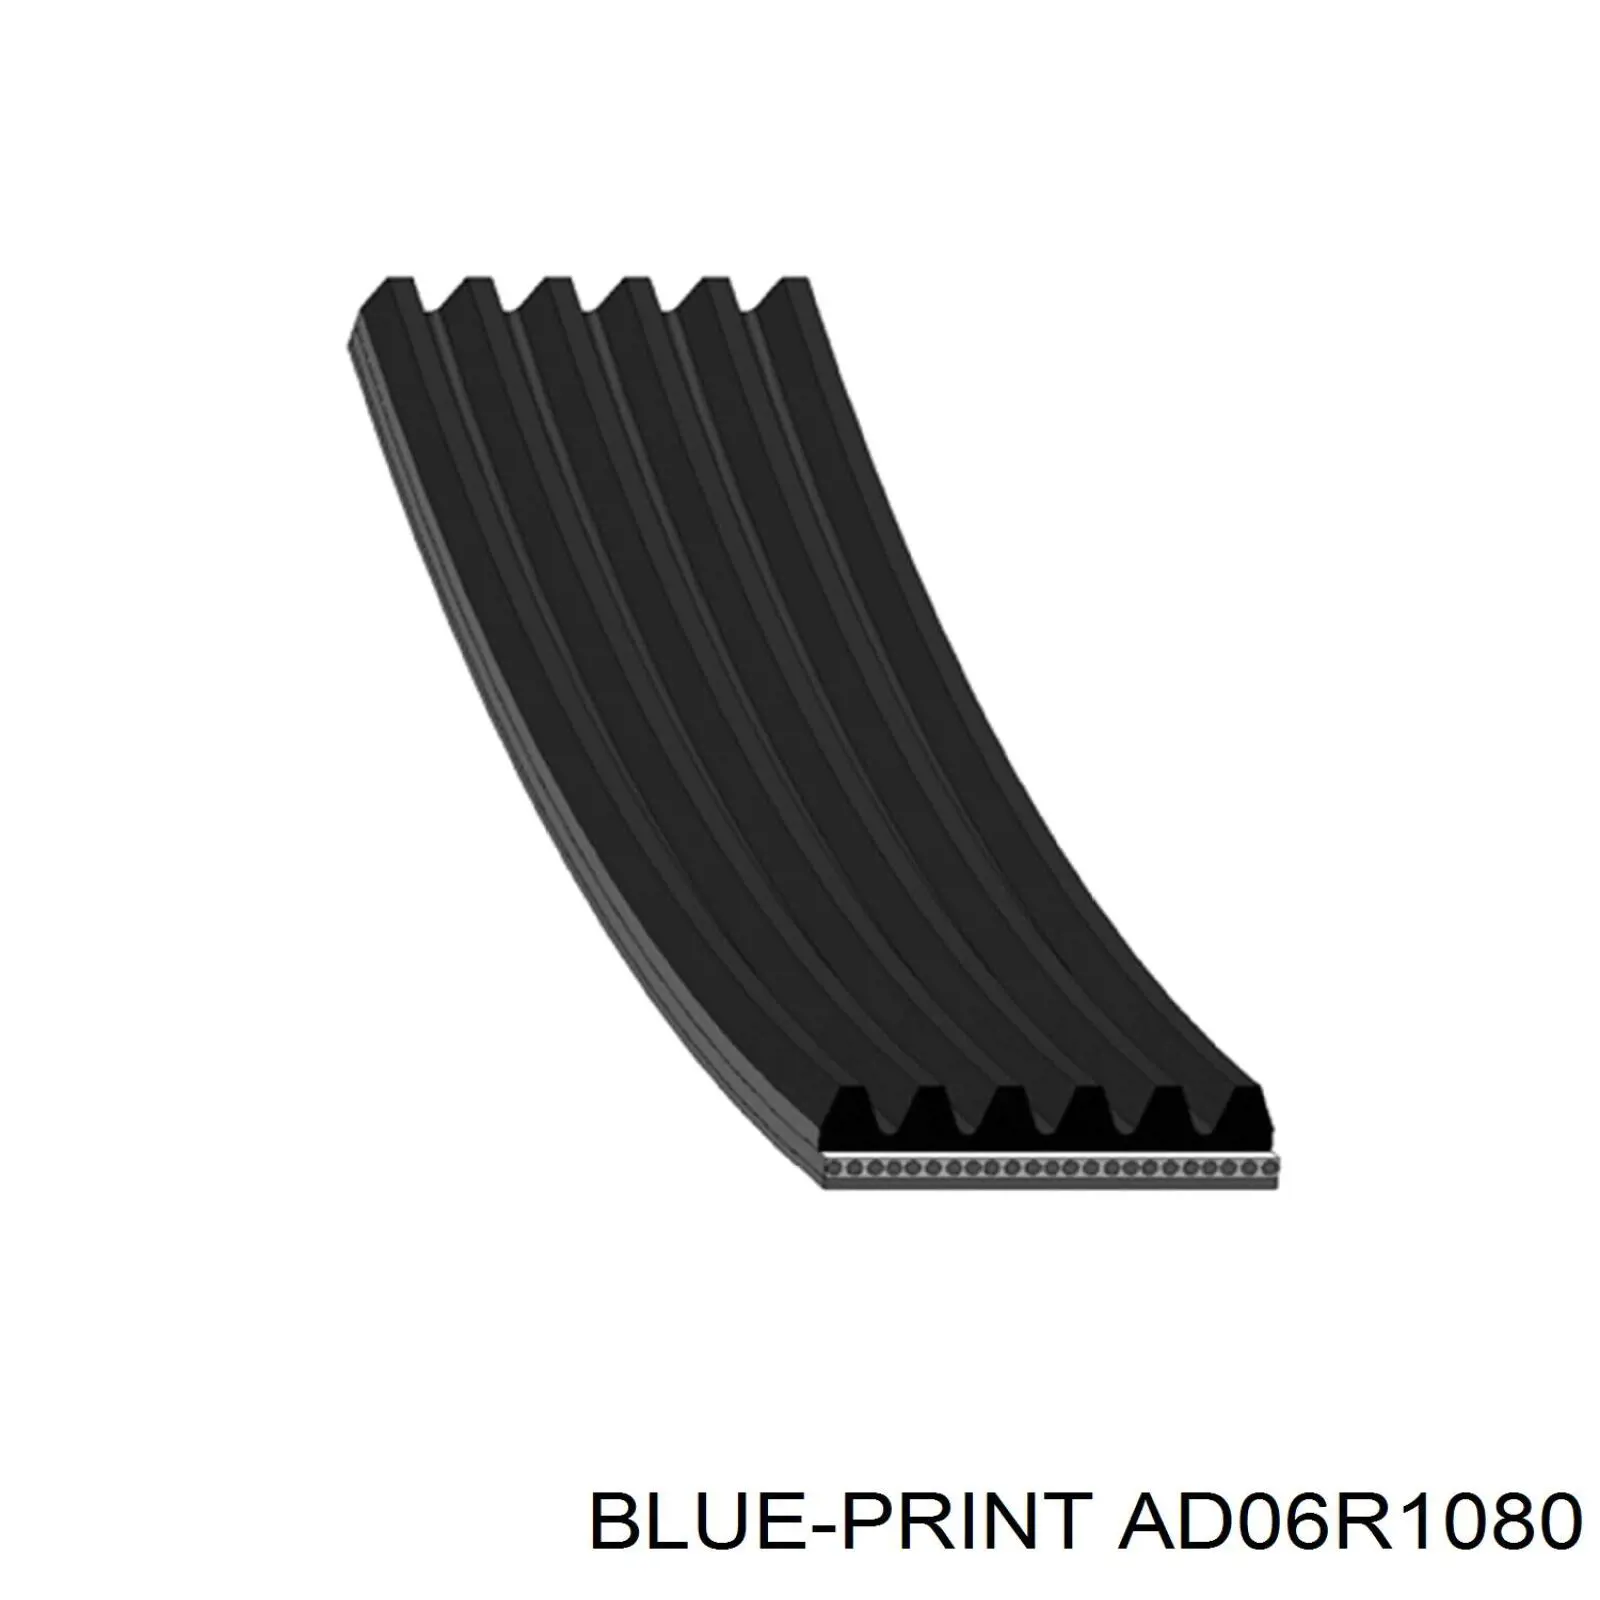 AD06R1080 Blue Print correa trapezoidal